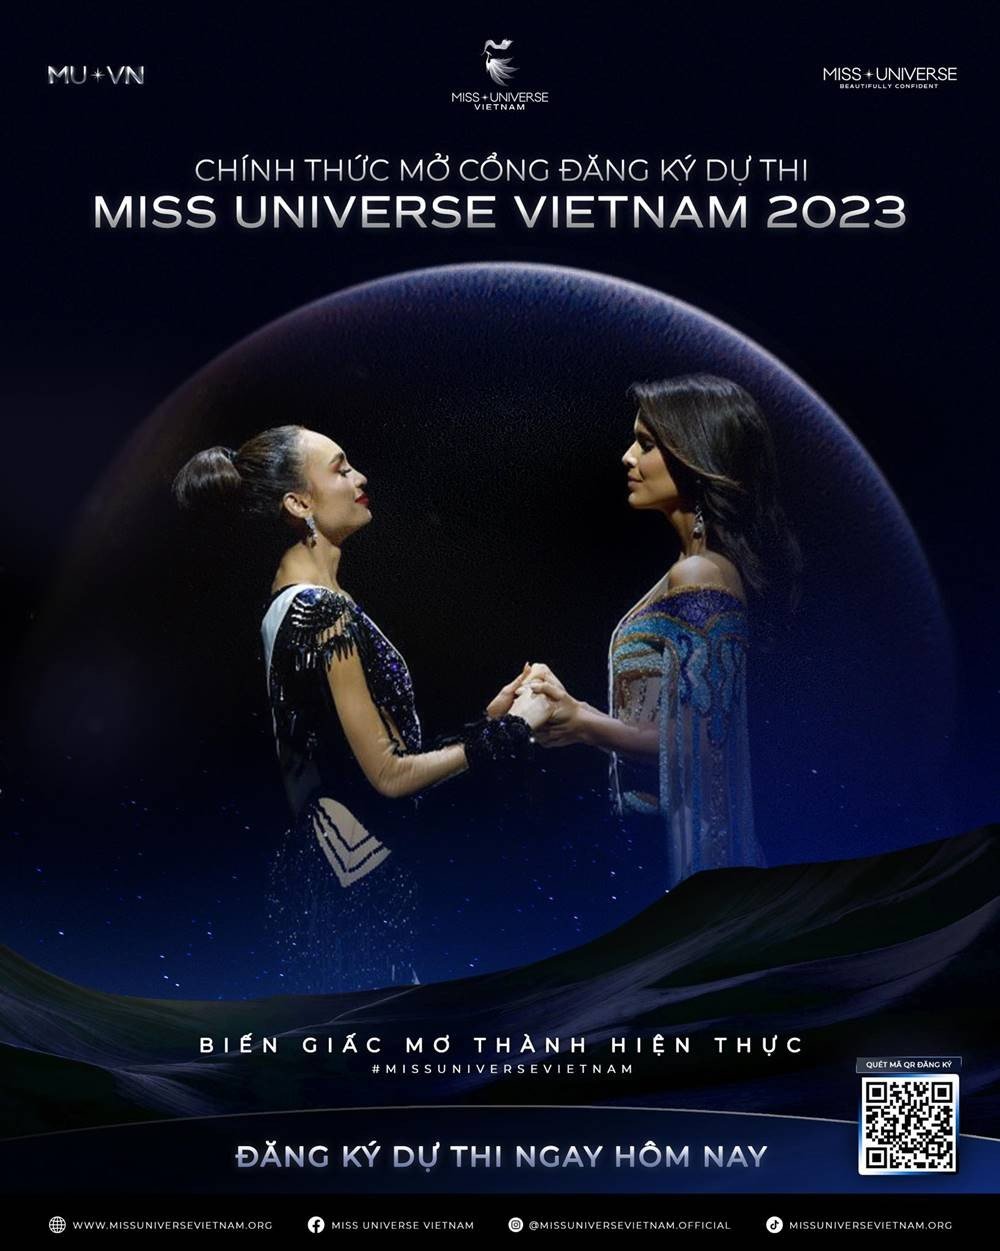 Miss Universe Vietnam 2023 đang trong giai đoạn tuyển sinh trong khi Miss Universe 2023 đã ấn định ngày chung kết. Ảnh: Miss Universe Vietnam.